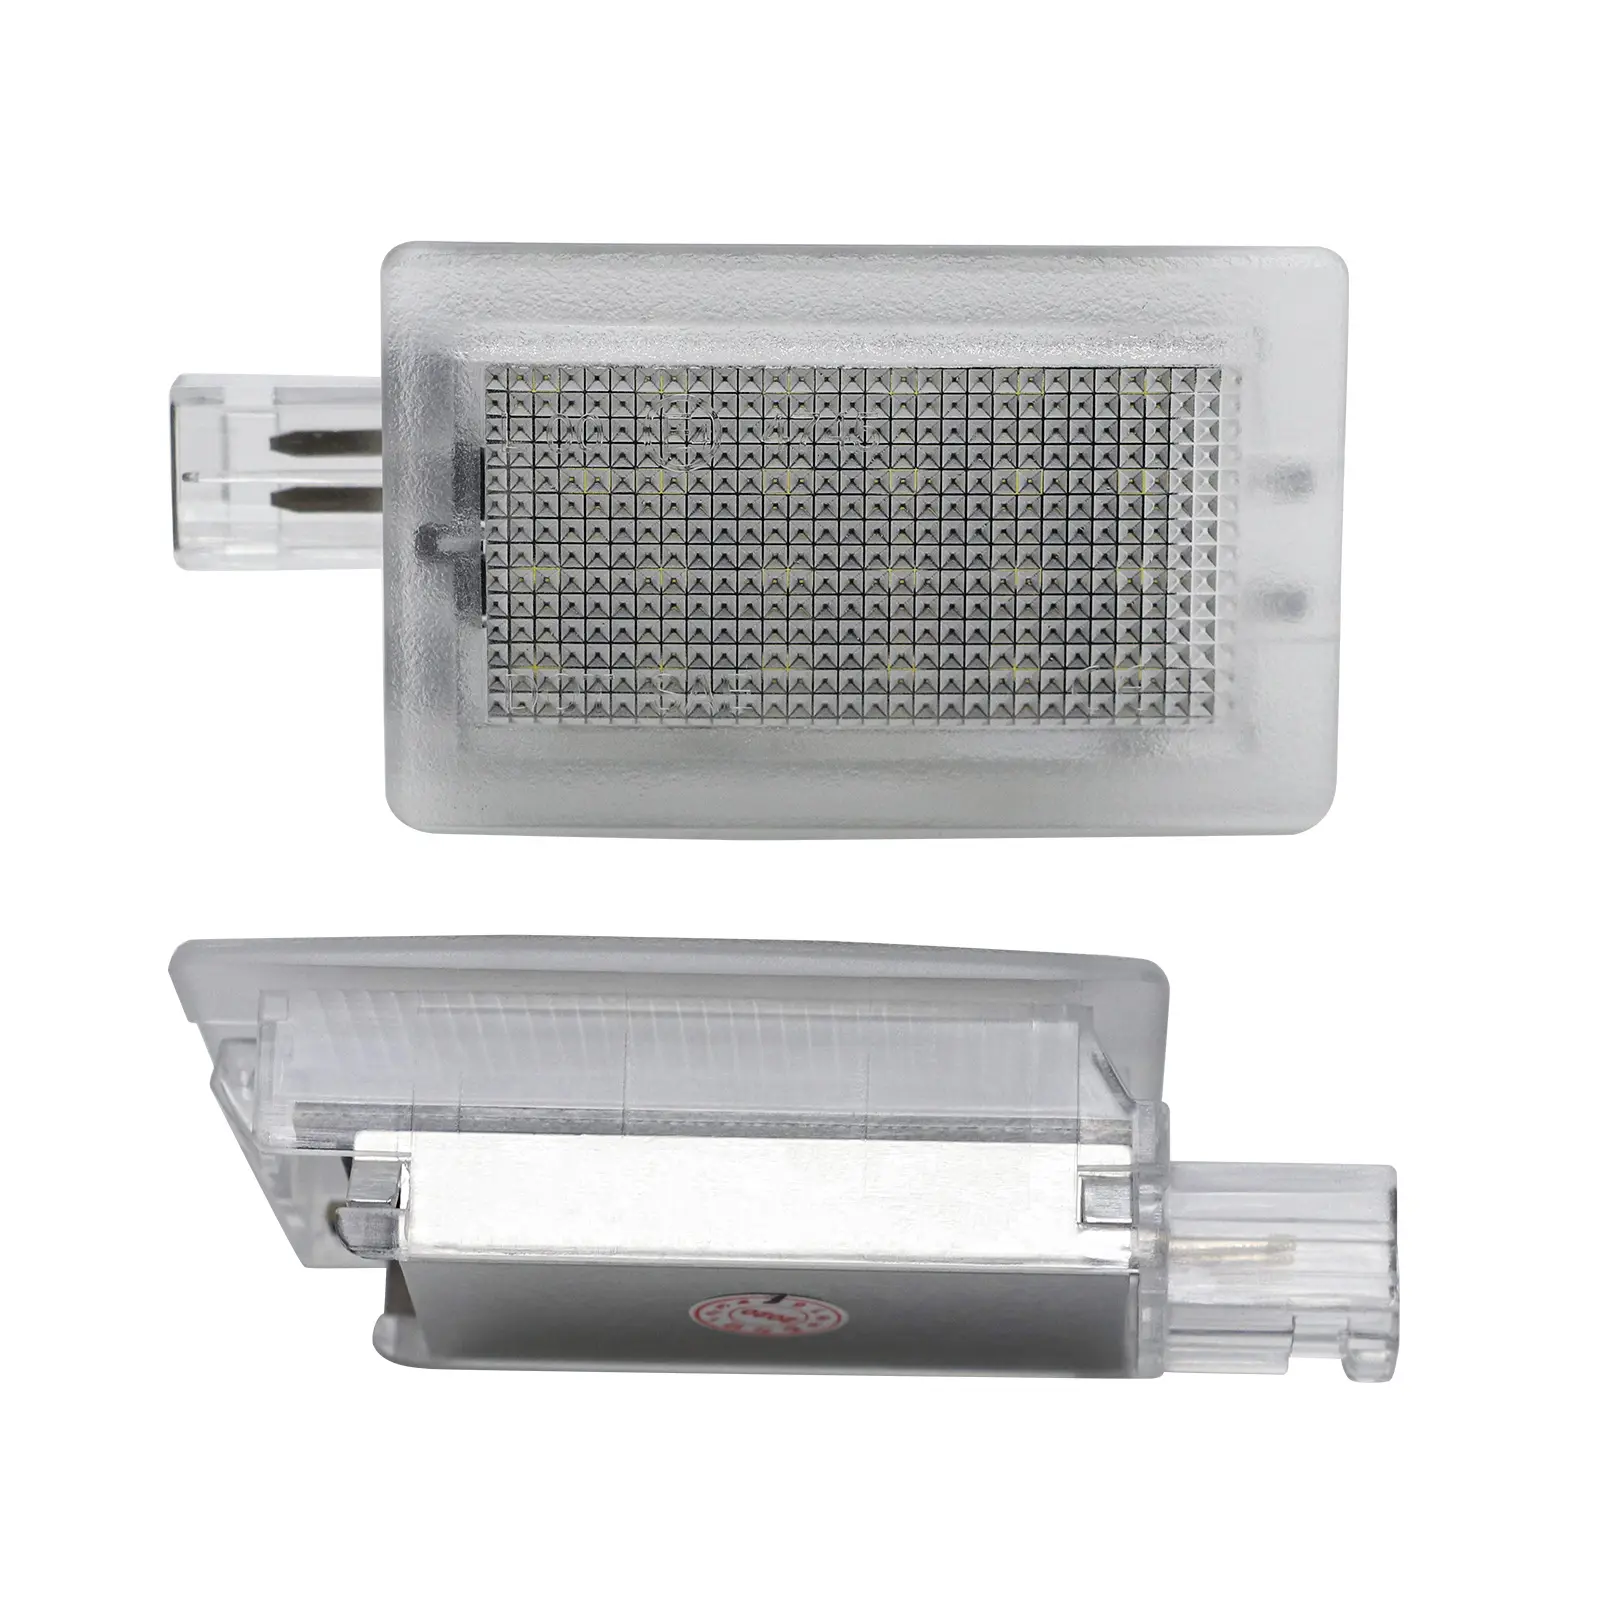 Ailead חדש עיצוב E-מארק SAE/אישור DOT LED באדיבות מנורת מטען תא באדיבות אור מנורת עבור דודג 'עבור קרייזלר 200